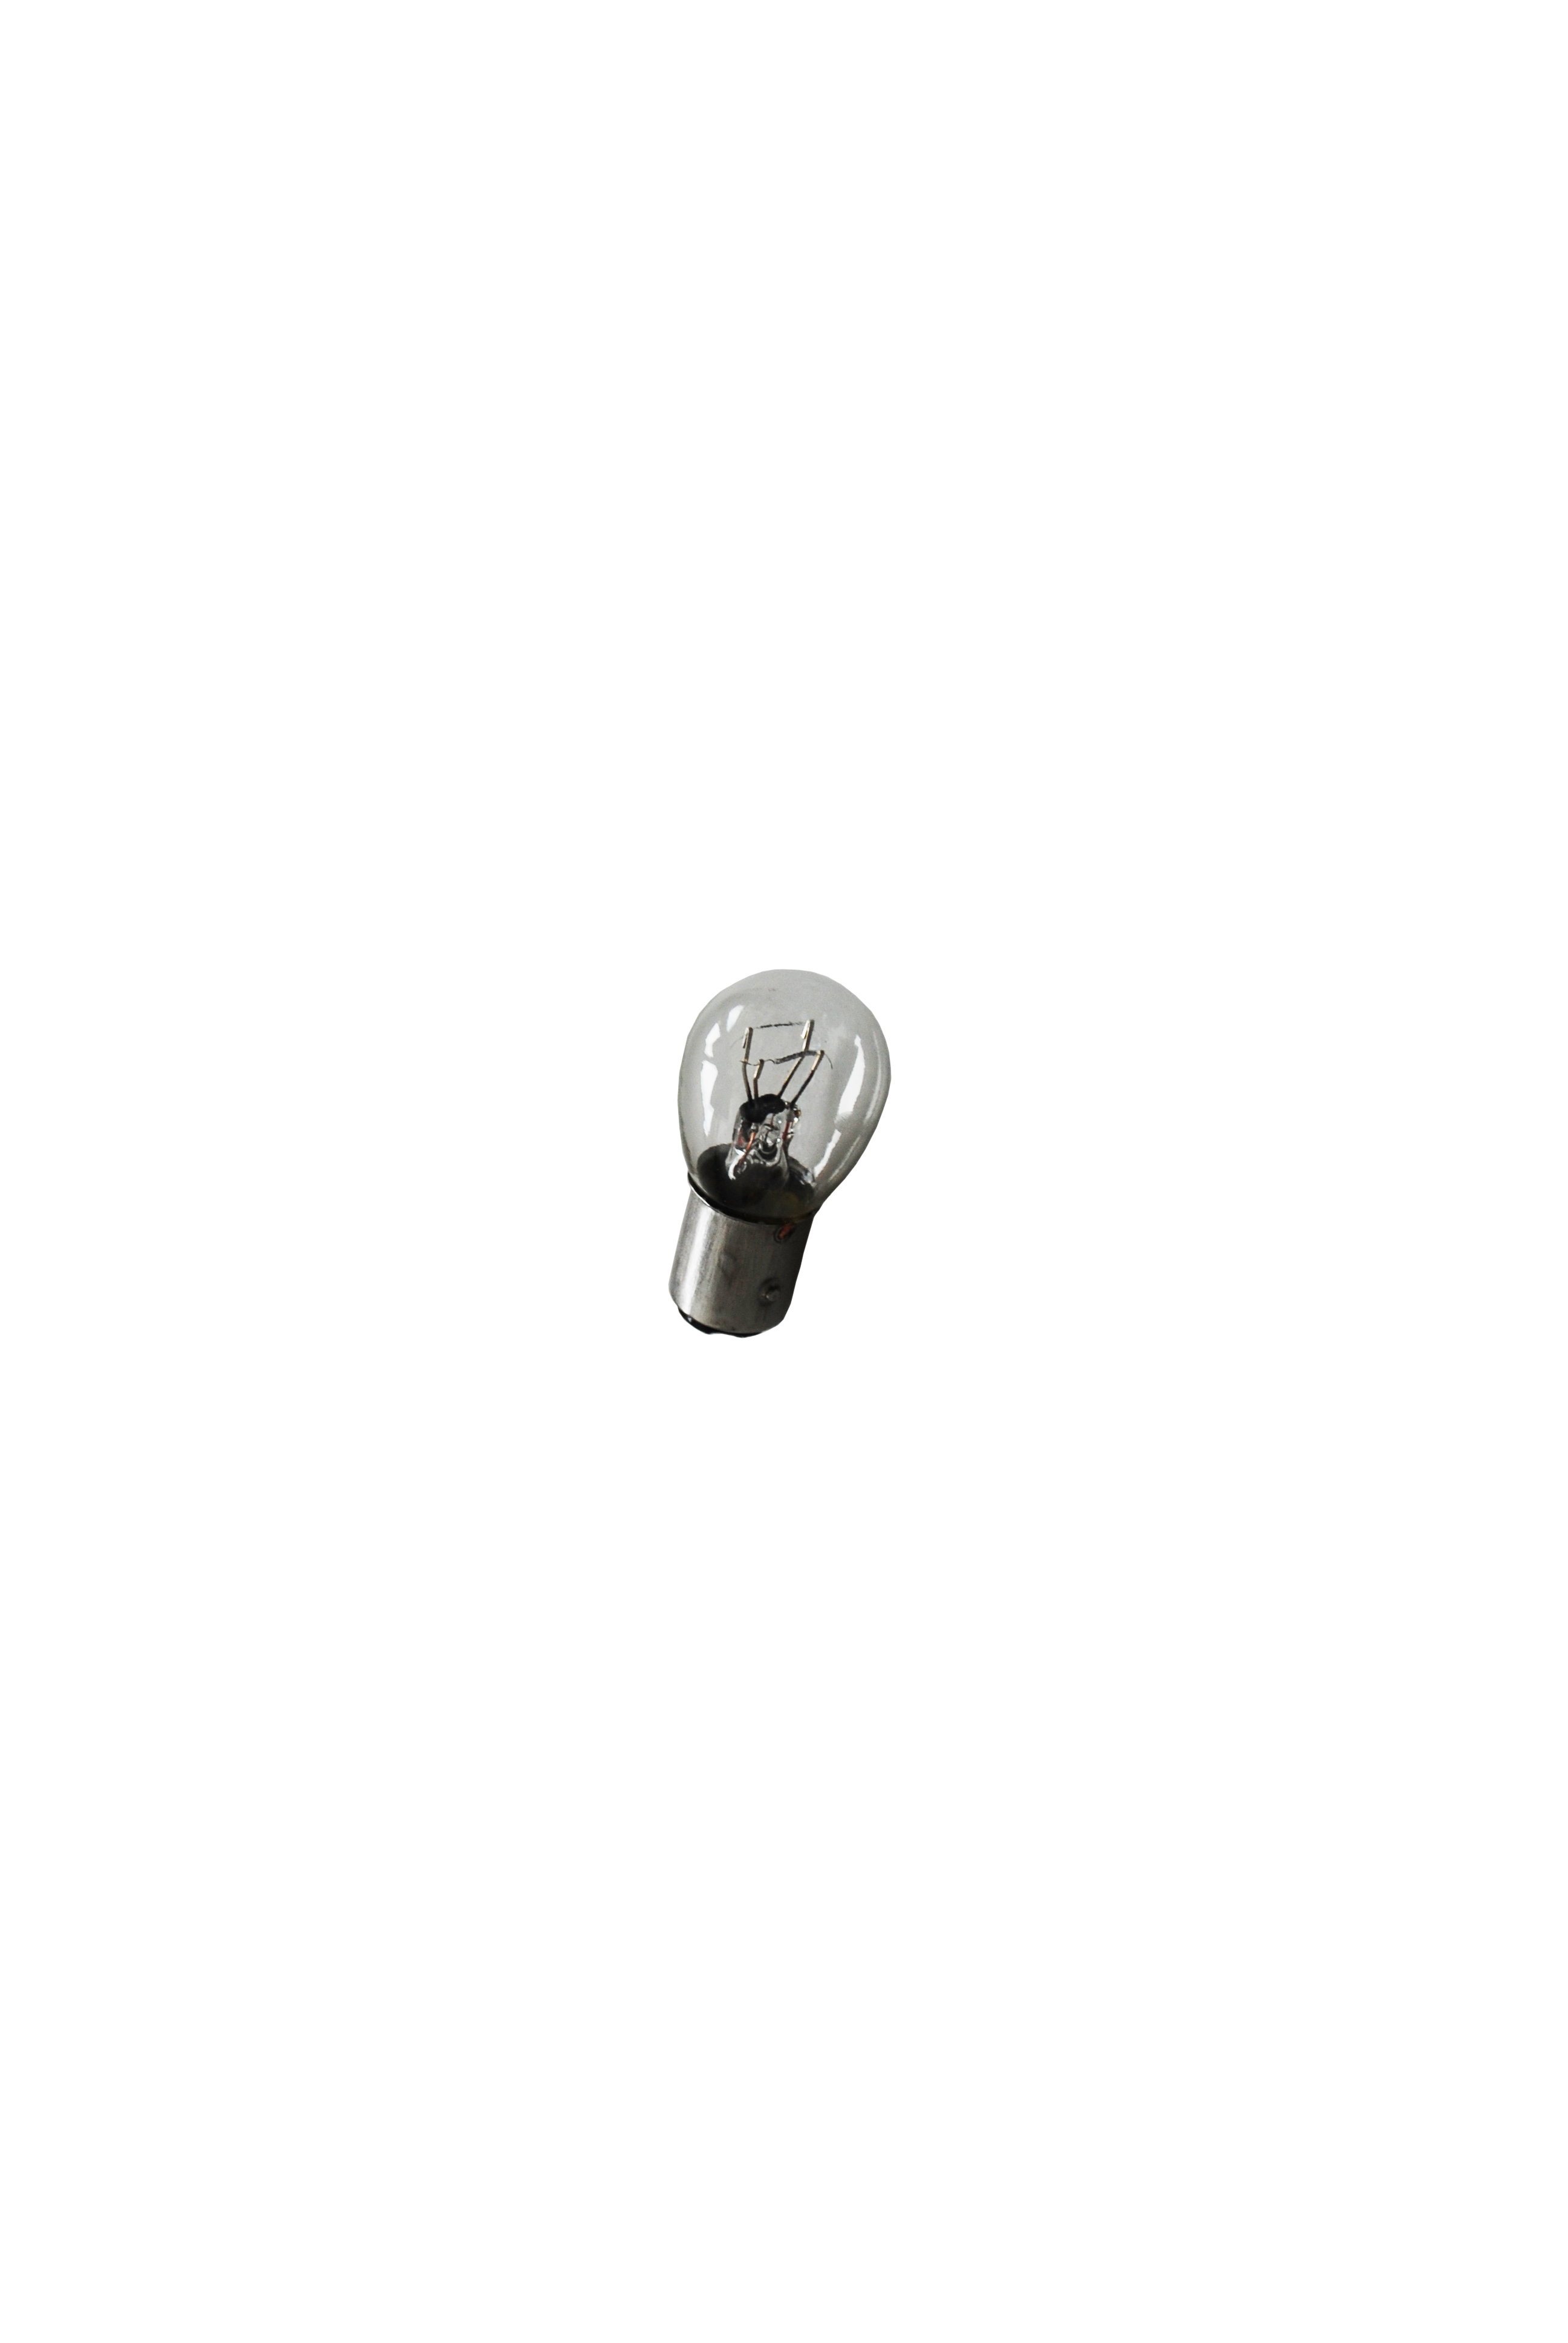 Kogellamp, 12 V/21/5 W, BAY15d fitting